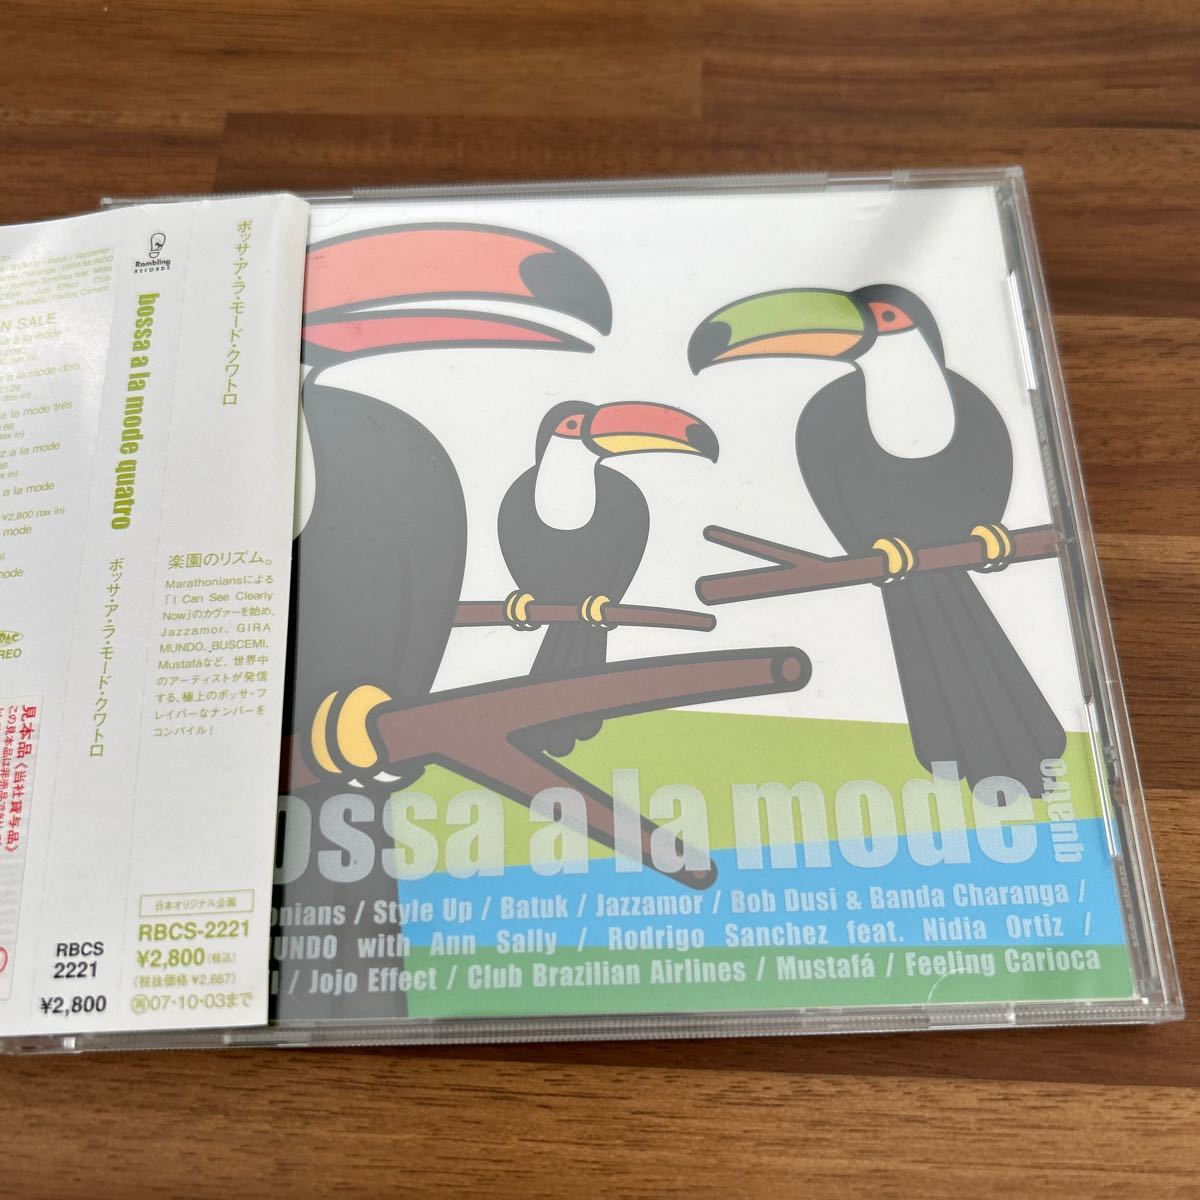 CD ボッサアラモード、ボサノバコンピレーションアルバムクワトロ楽園のリズムの画像1